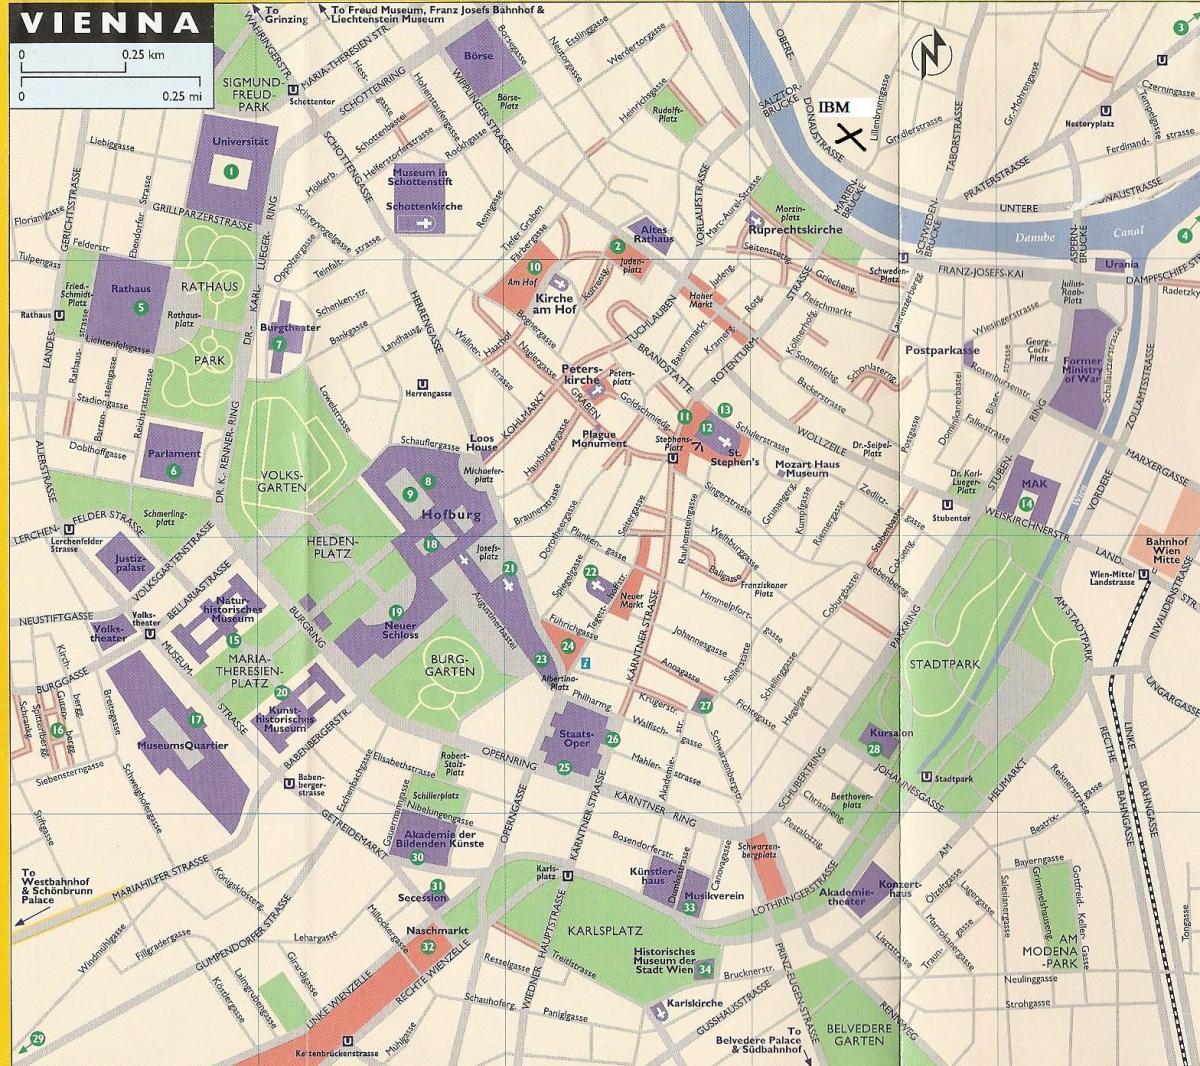 Mapa ng departamento ng mga tindahan sa Vienna 